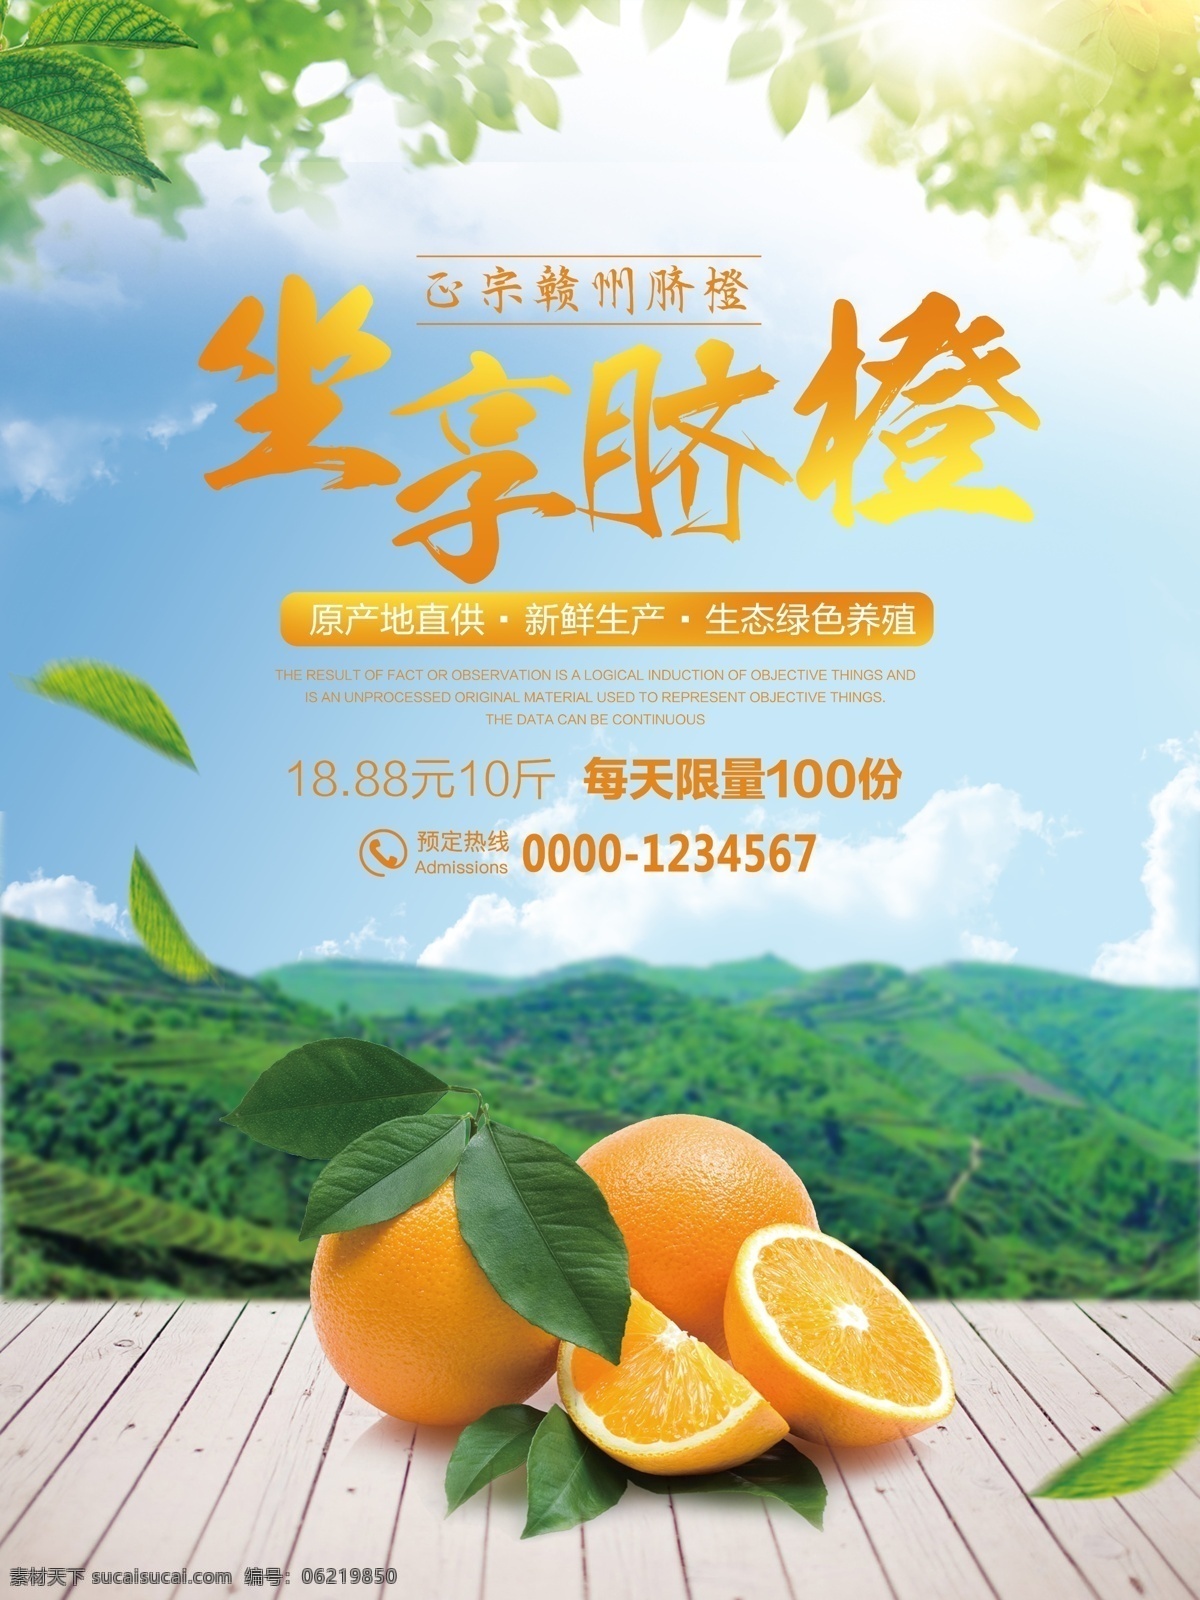 创意 合成 水果 促销 新鲜水果 促销海报设计 脐橙 高端